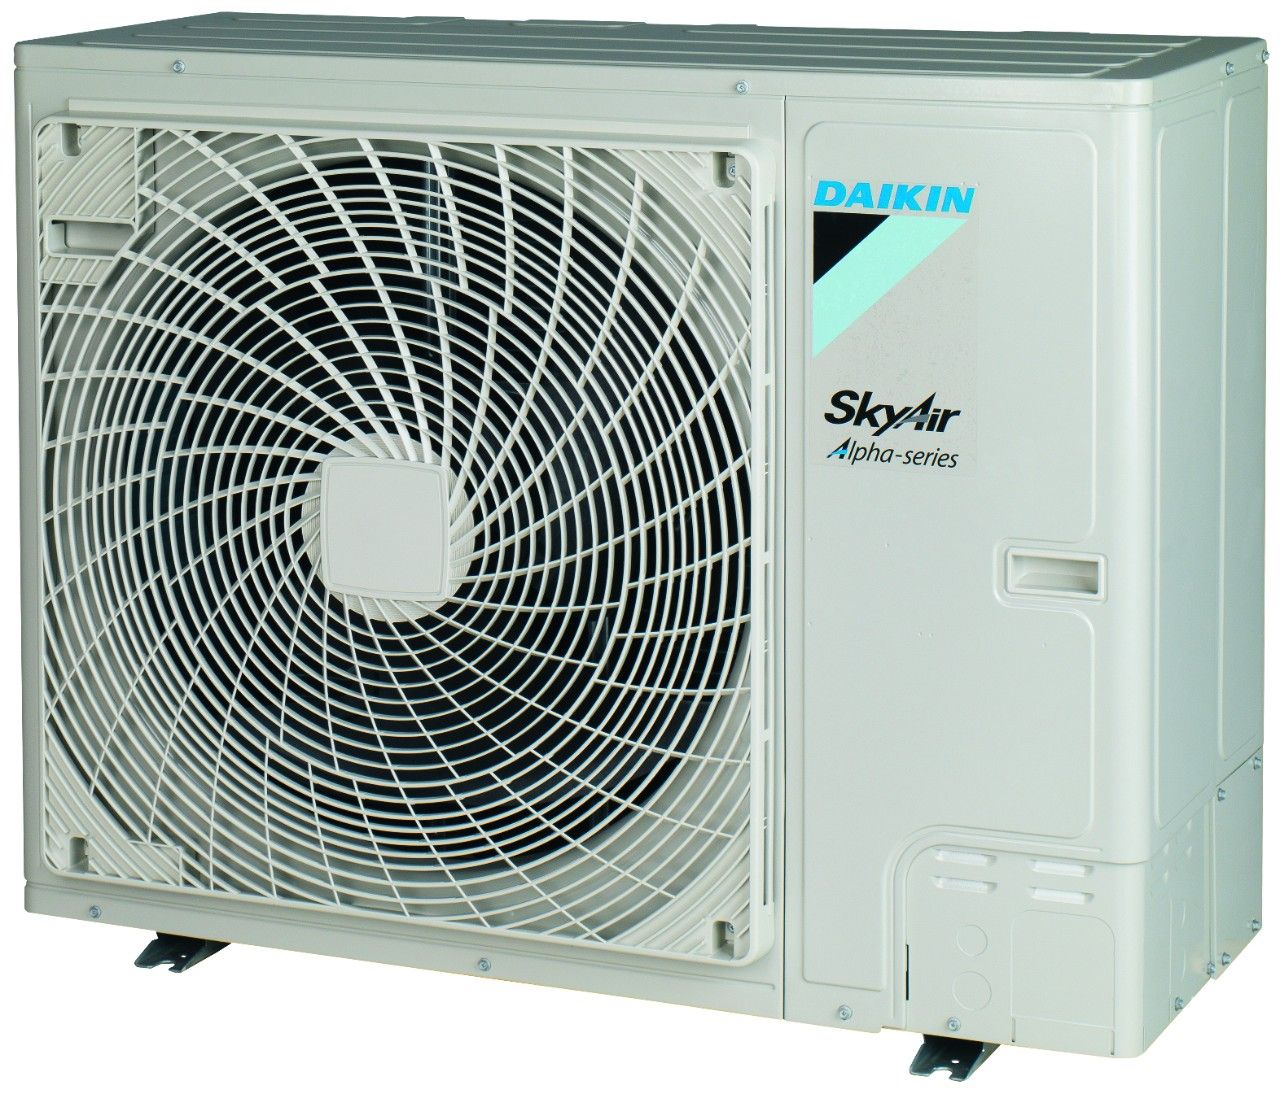 Faa-a / rzag-ny1 - groupes de climatisation & unités extérieures - daikin - puissance frigorifique 6.80 et 9.50 kw_0